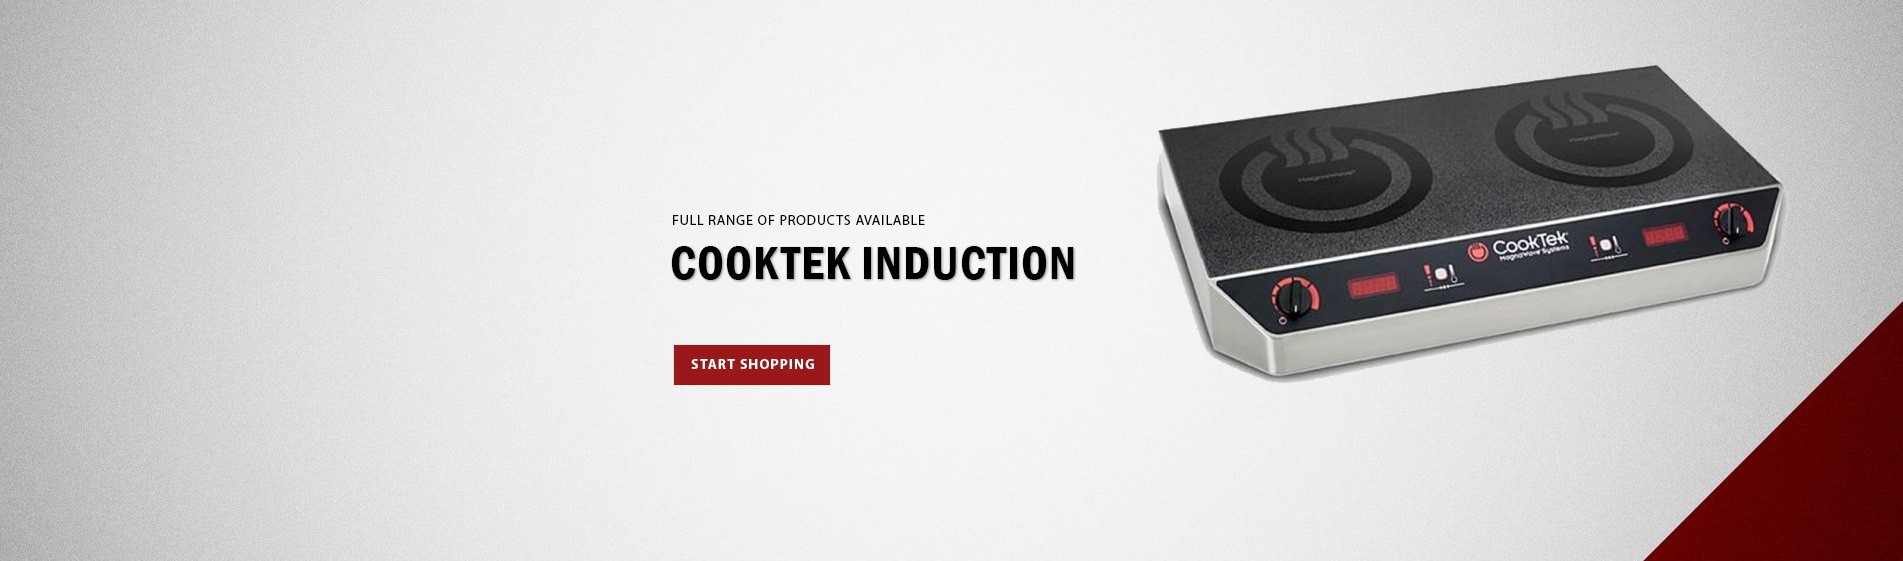 Cooktek Induction Range